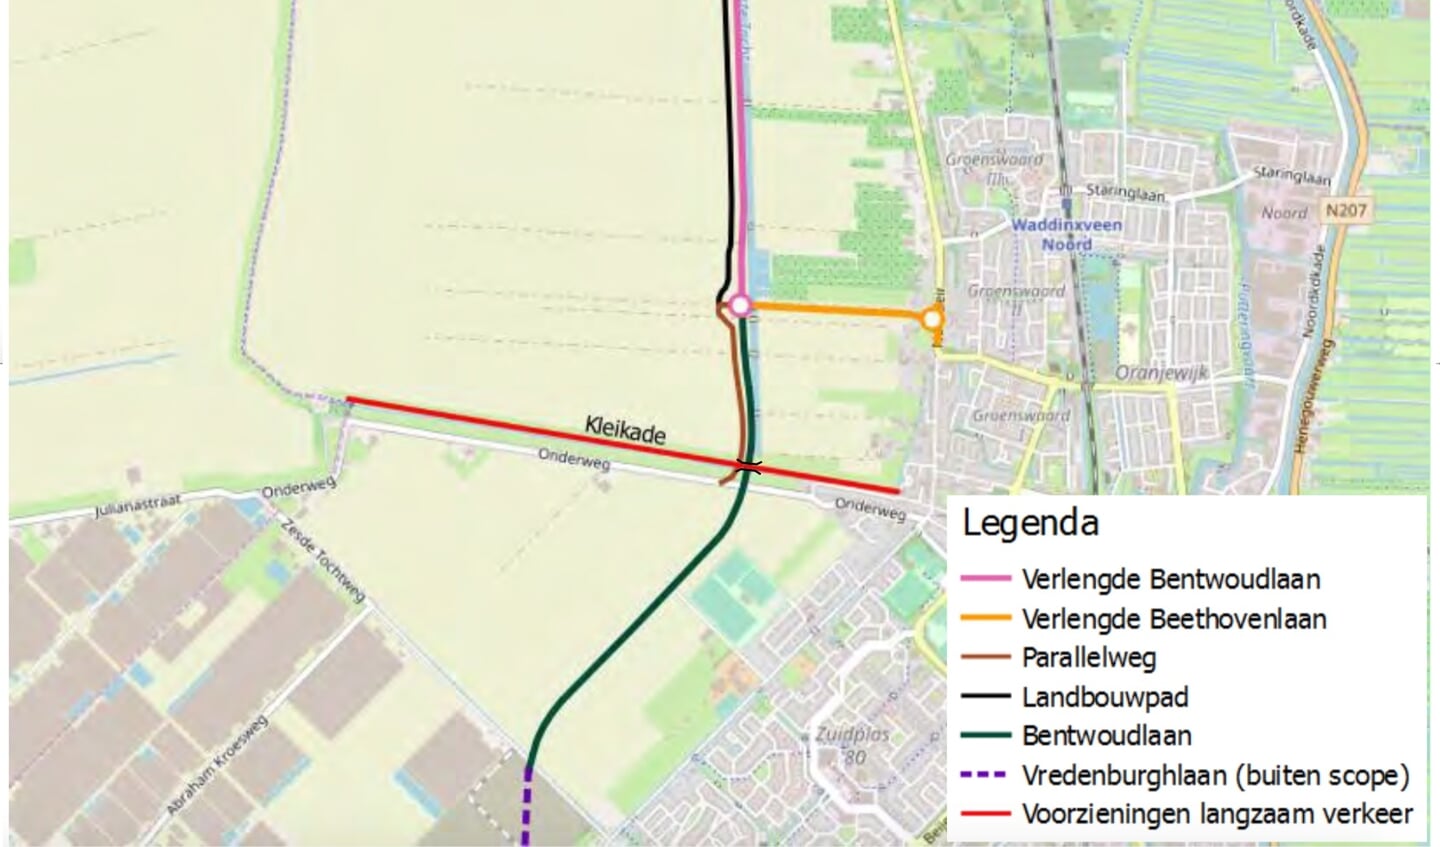 De (Verlengde) Bentwoudlaan, in roze en groen, wordt de nieuwe 
noord-zuidverbinding langs de westkant van Waddinxveen.